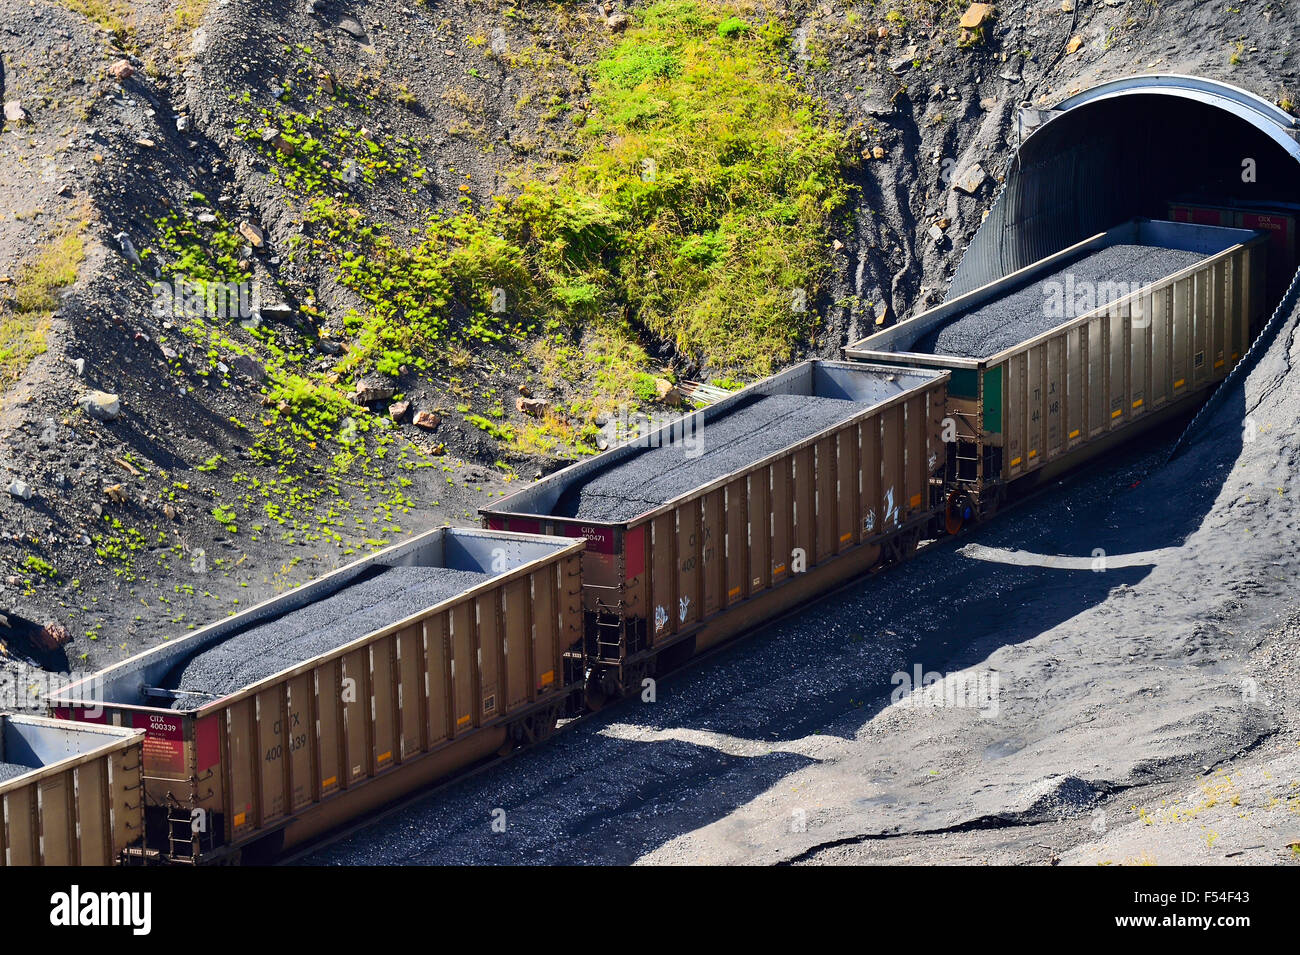 Eine Nahaufnahme der horizontalen Bild von Eisenbahnwaggons beladen mit Kohle Ruder Reisen durch einen tunnel Stockfoto